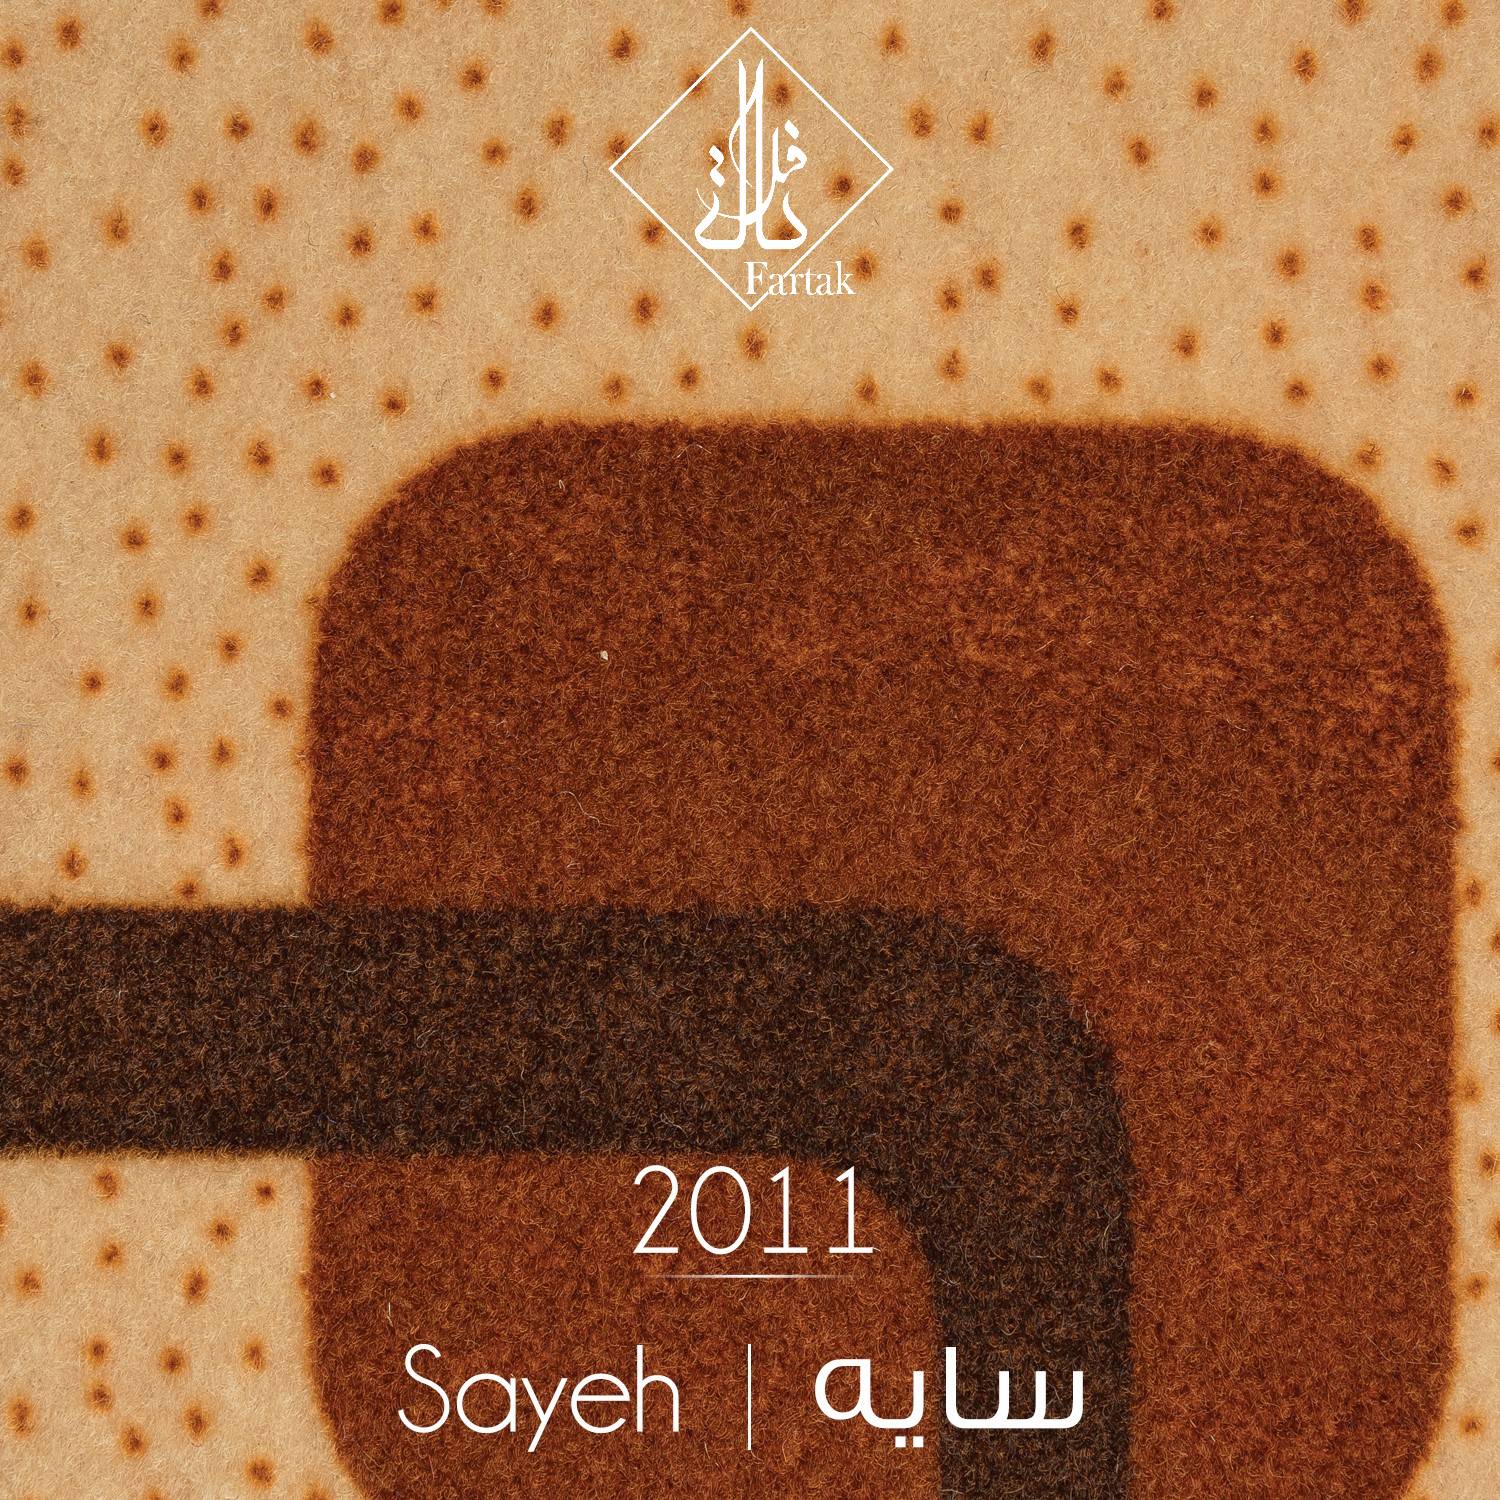 موکت ظریف مصور طرح سایه کد ۲۰۱۱